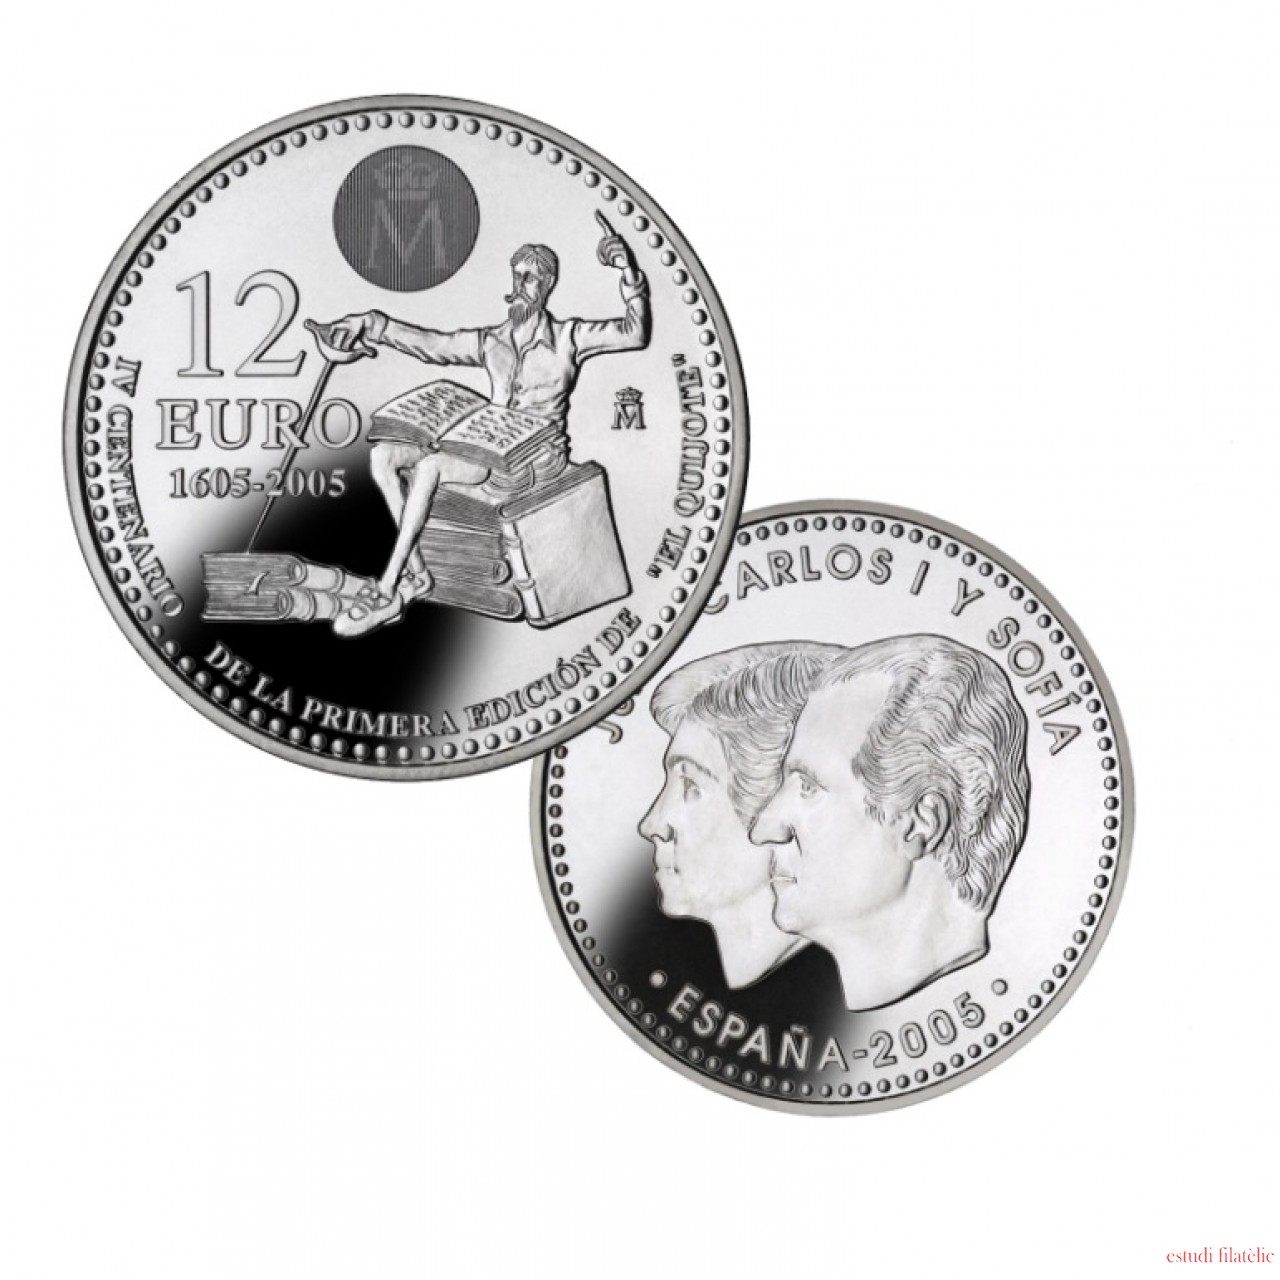 apagado Sumergido Seguro España Spain monedas Euros conmemorativos 2005 12 euros Plata